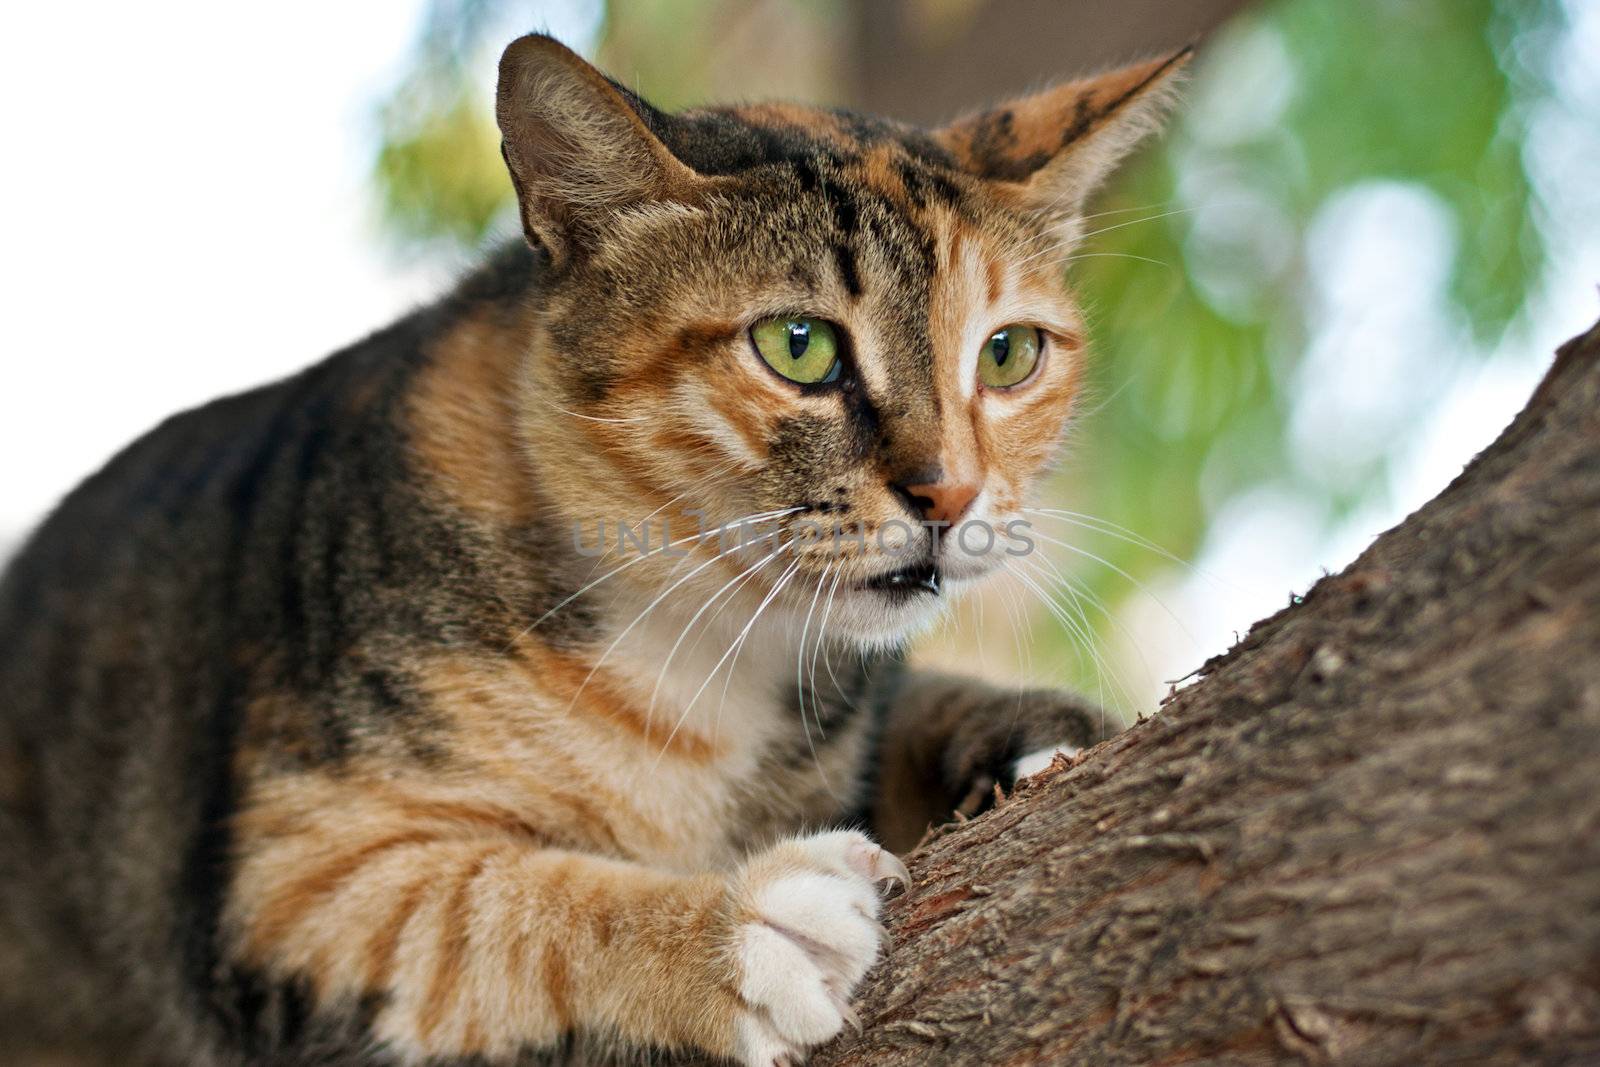 cat climbing on a tree by palinchak